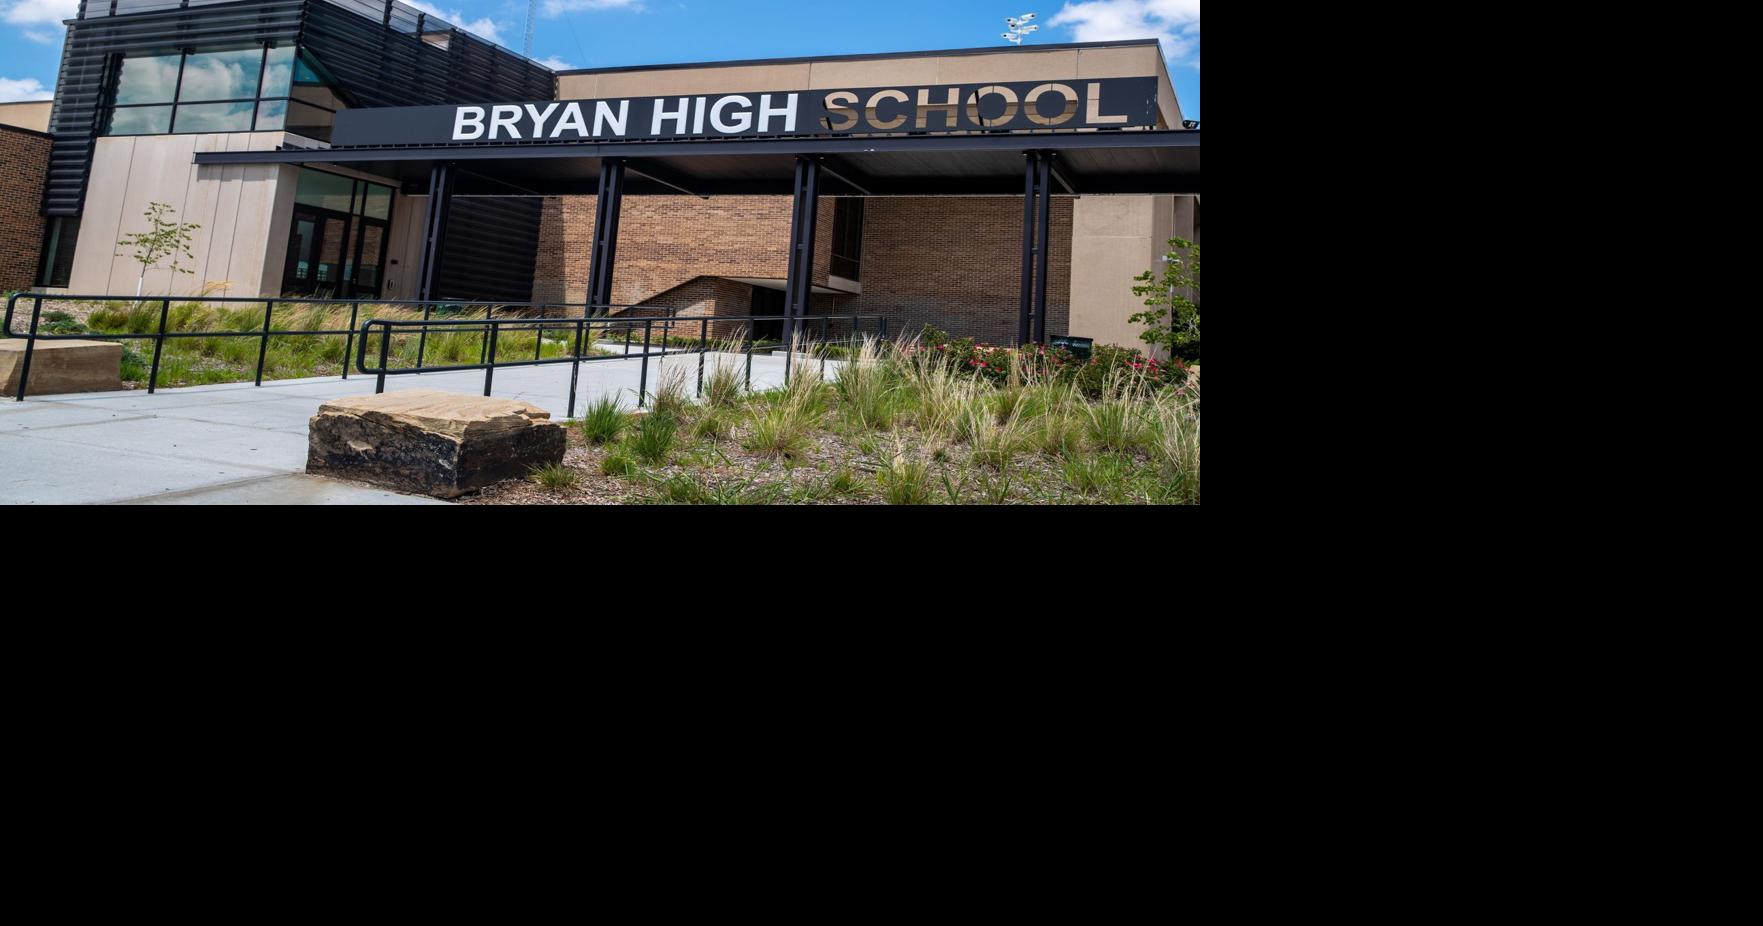 Handgun found in car in Bryant High School parking lot